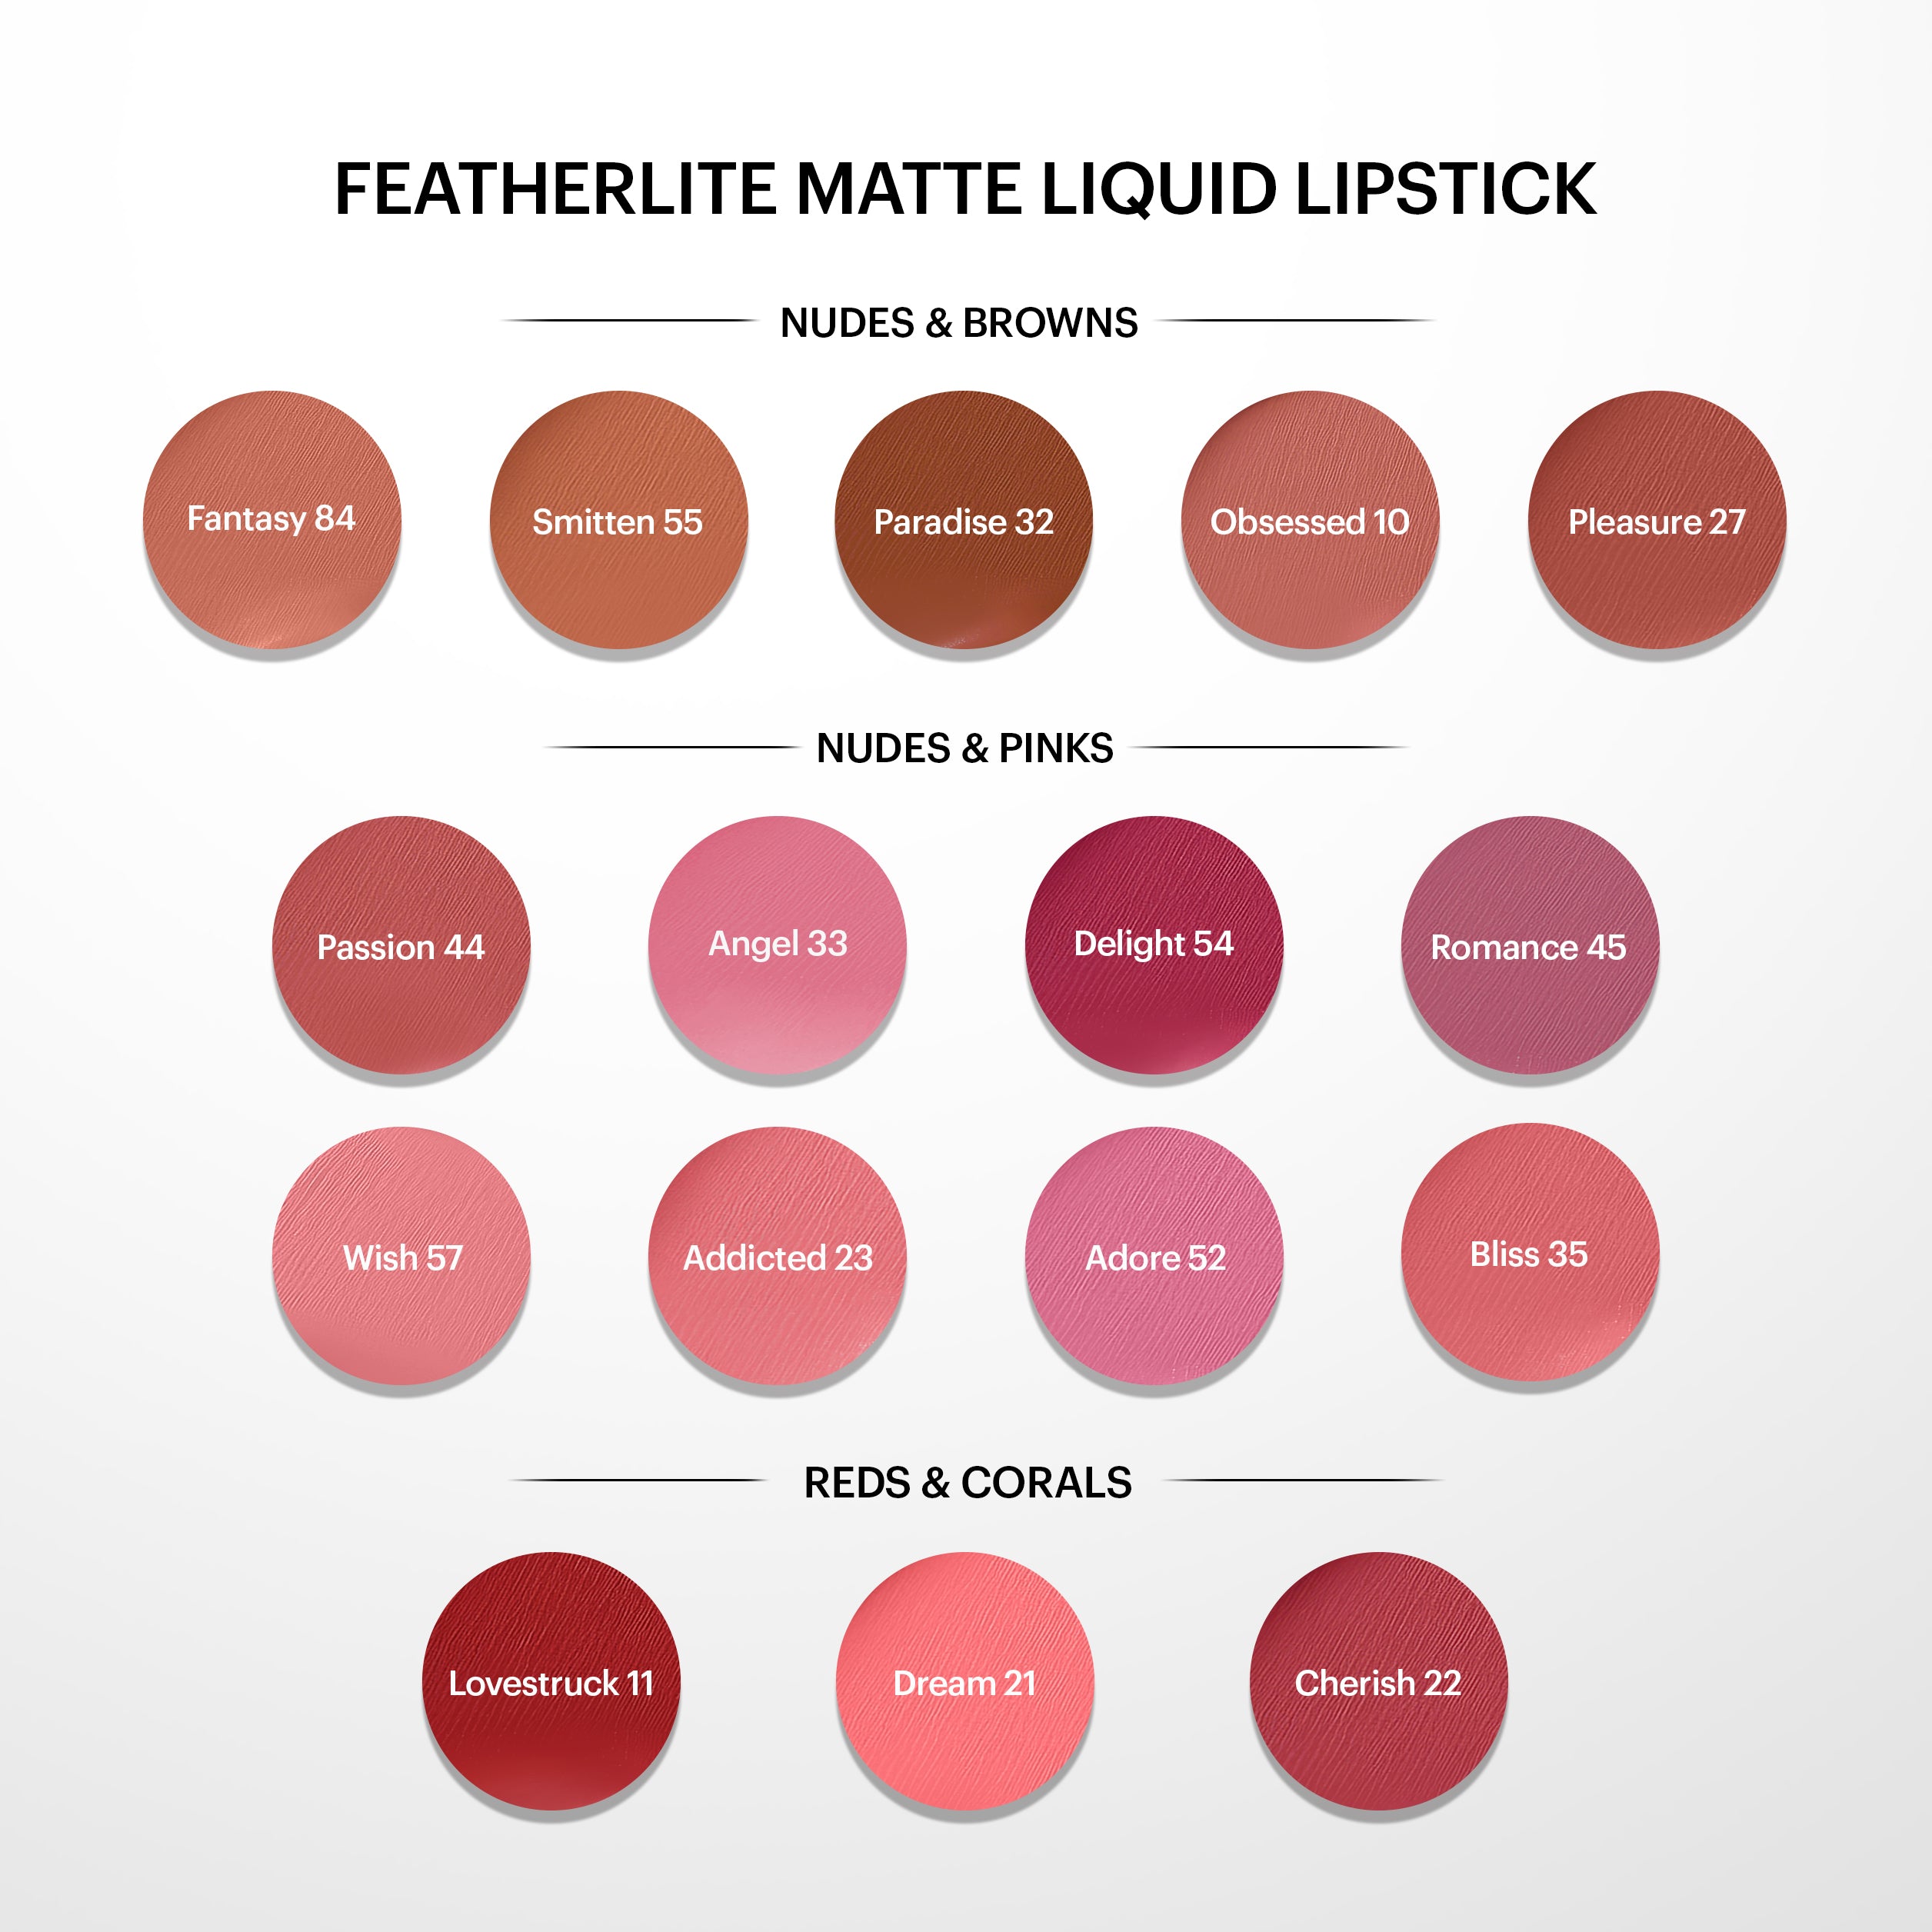 Featherlite Matte Liquid Lipstick: Lovestruck 11